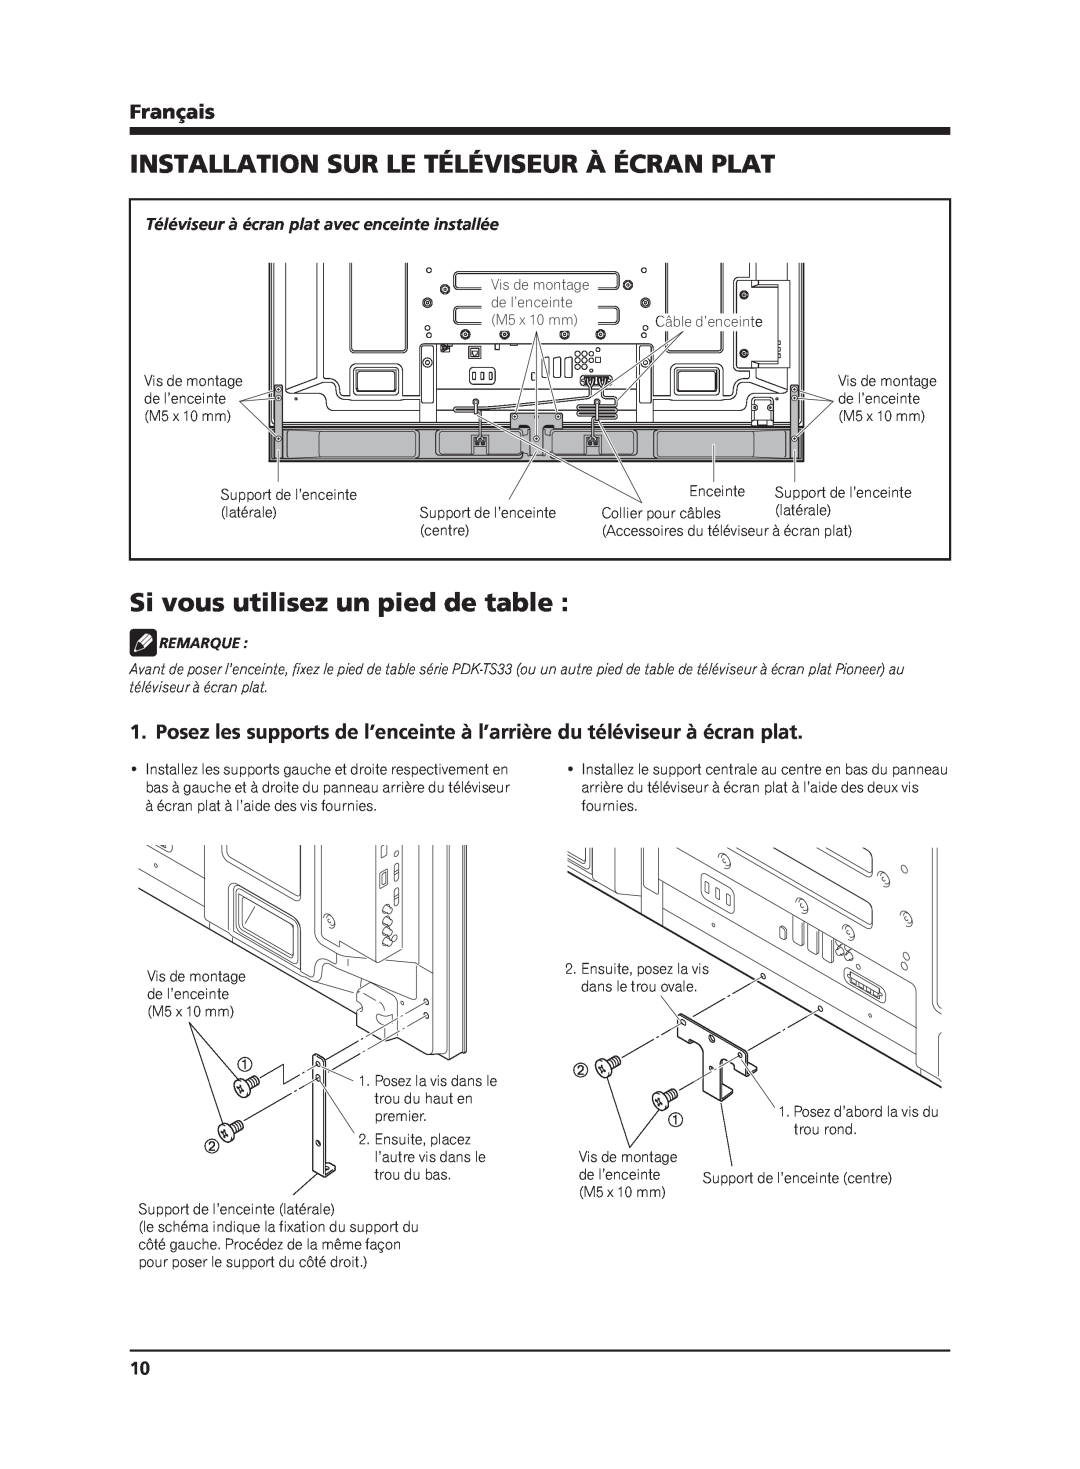 Pioneer PDP-S63 manual Installation Sur Le Téléviseur À Écran Plat, Si vous utilisez un pied de table, Français, Remarque 